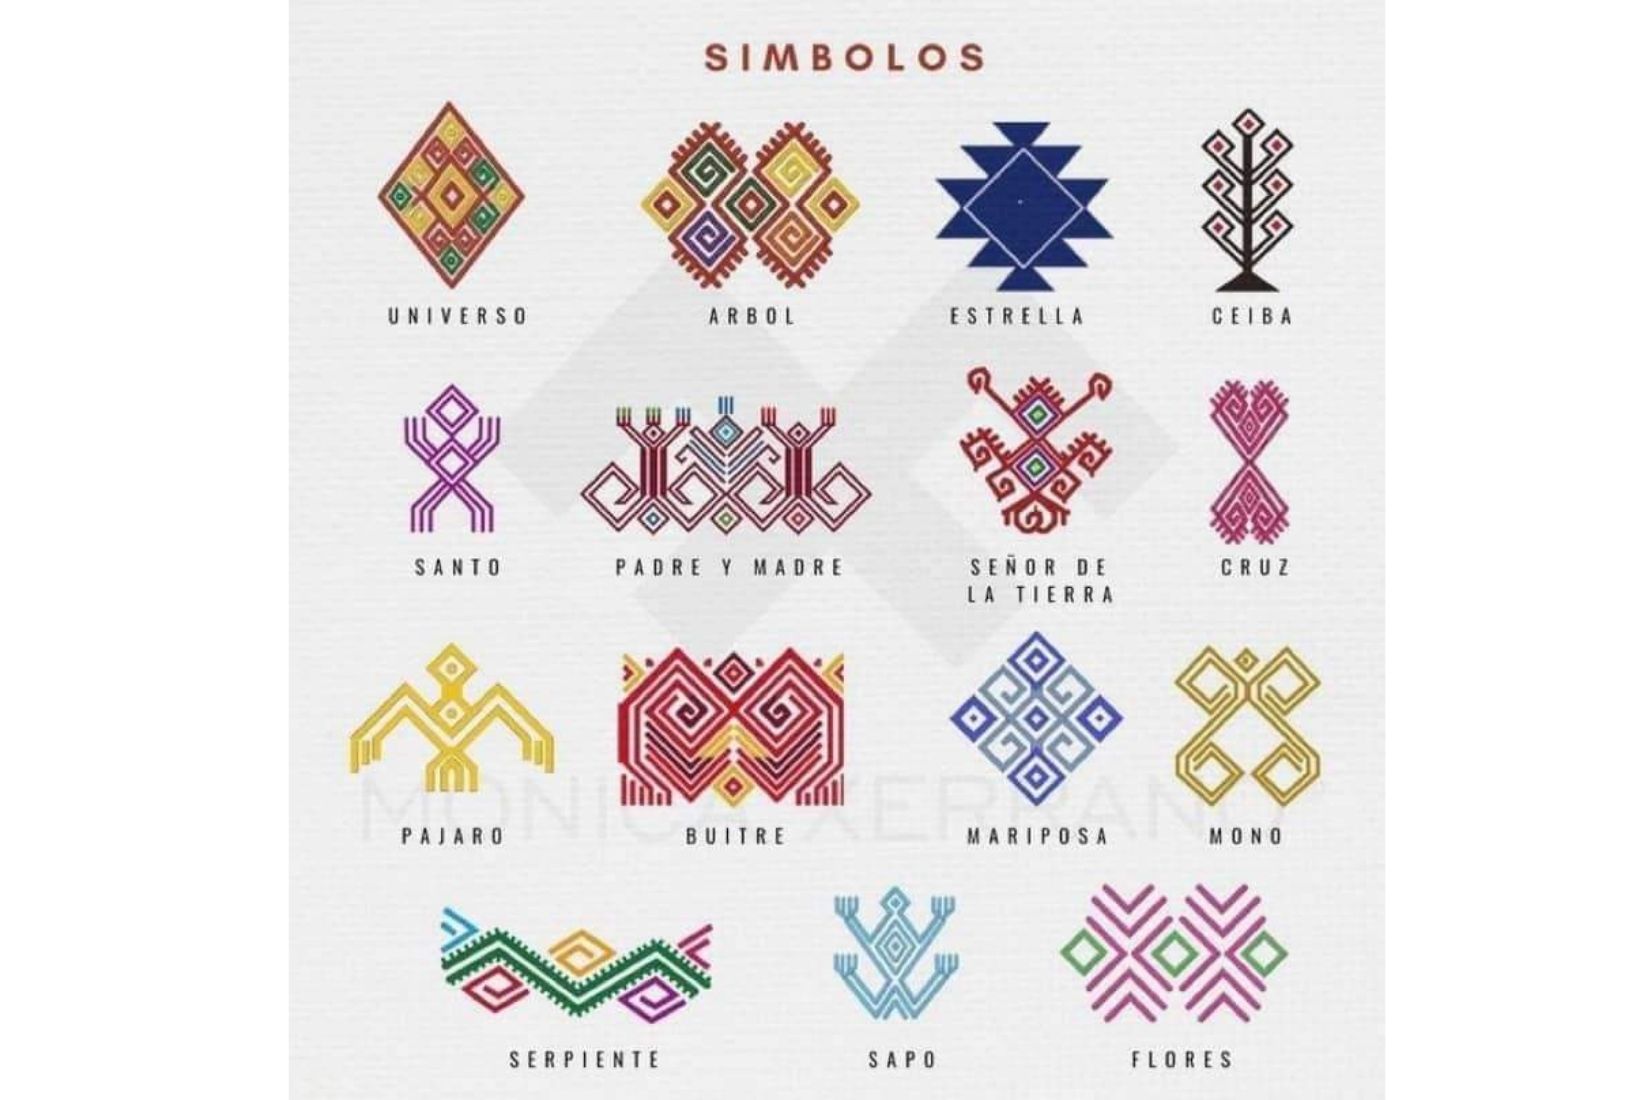 Significado de los símbolos en los tejidos de telar elaborados por los artesanos chiapanecos.